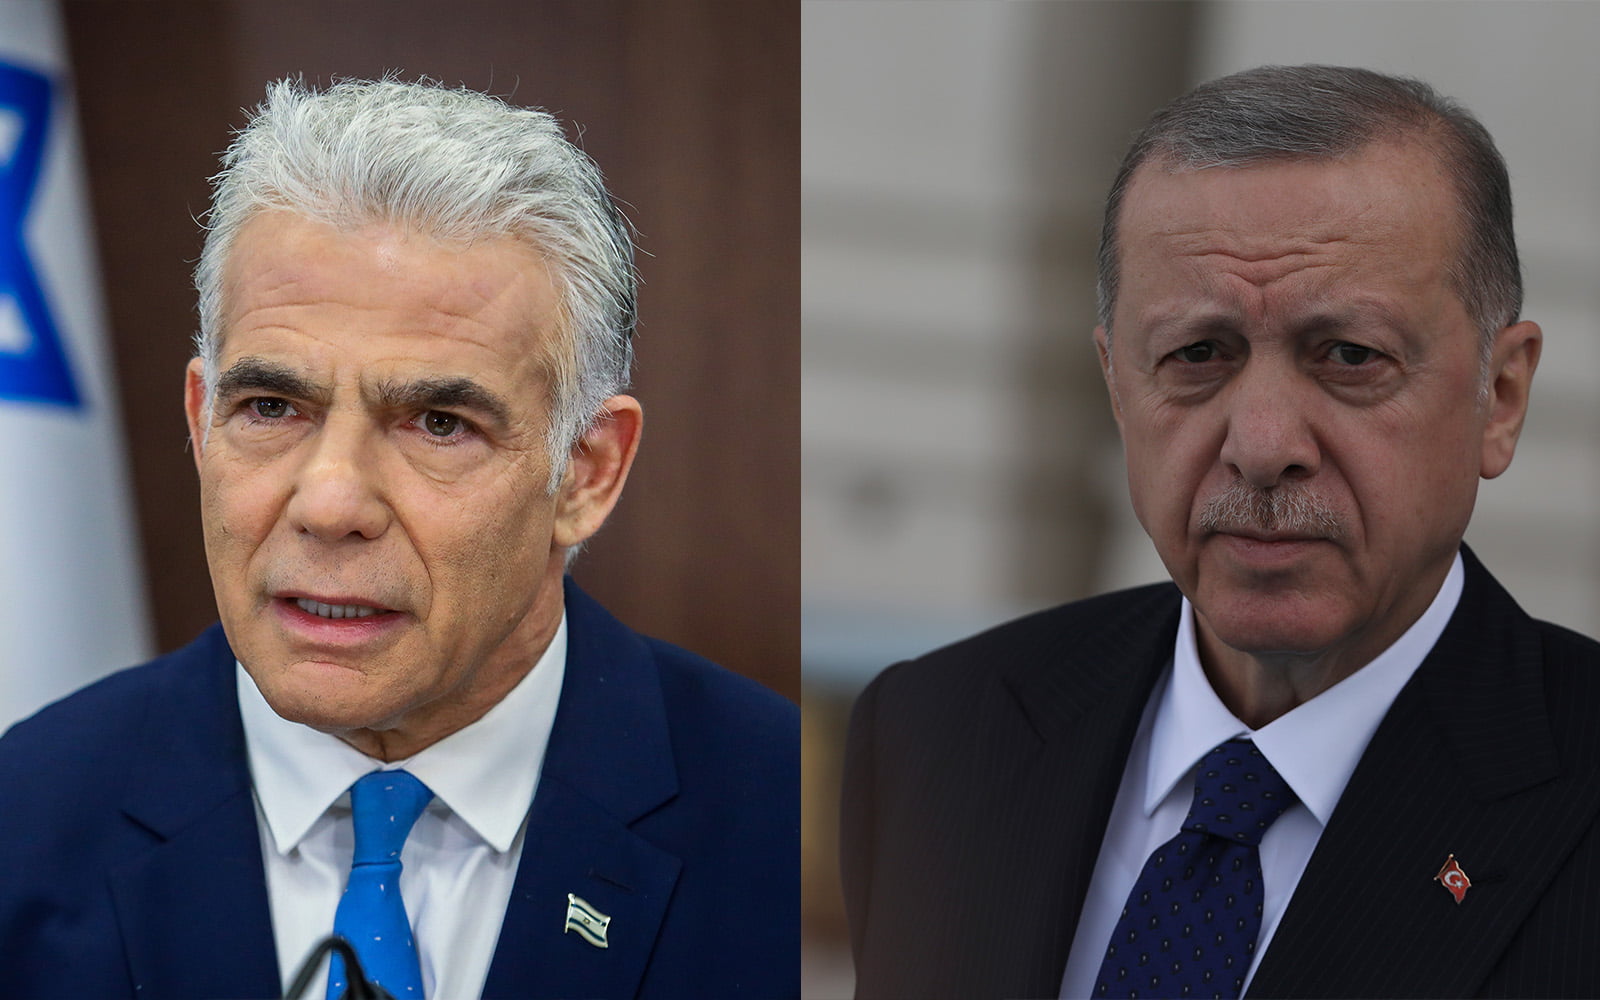 Ο Ερντογάν και ο Ισραηλινός πρωθυπουργός Lapid  συζητούν για τις σχέσεις Τουρκίας και Ισραήλ